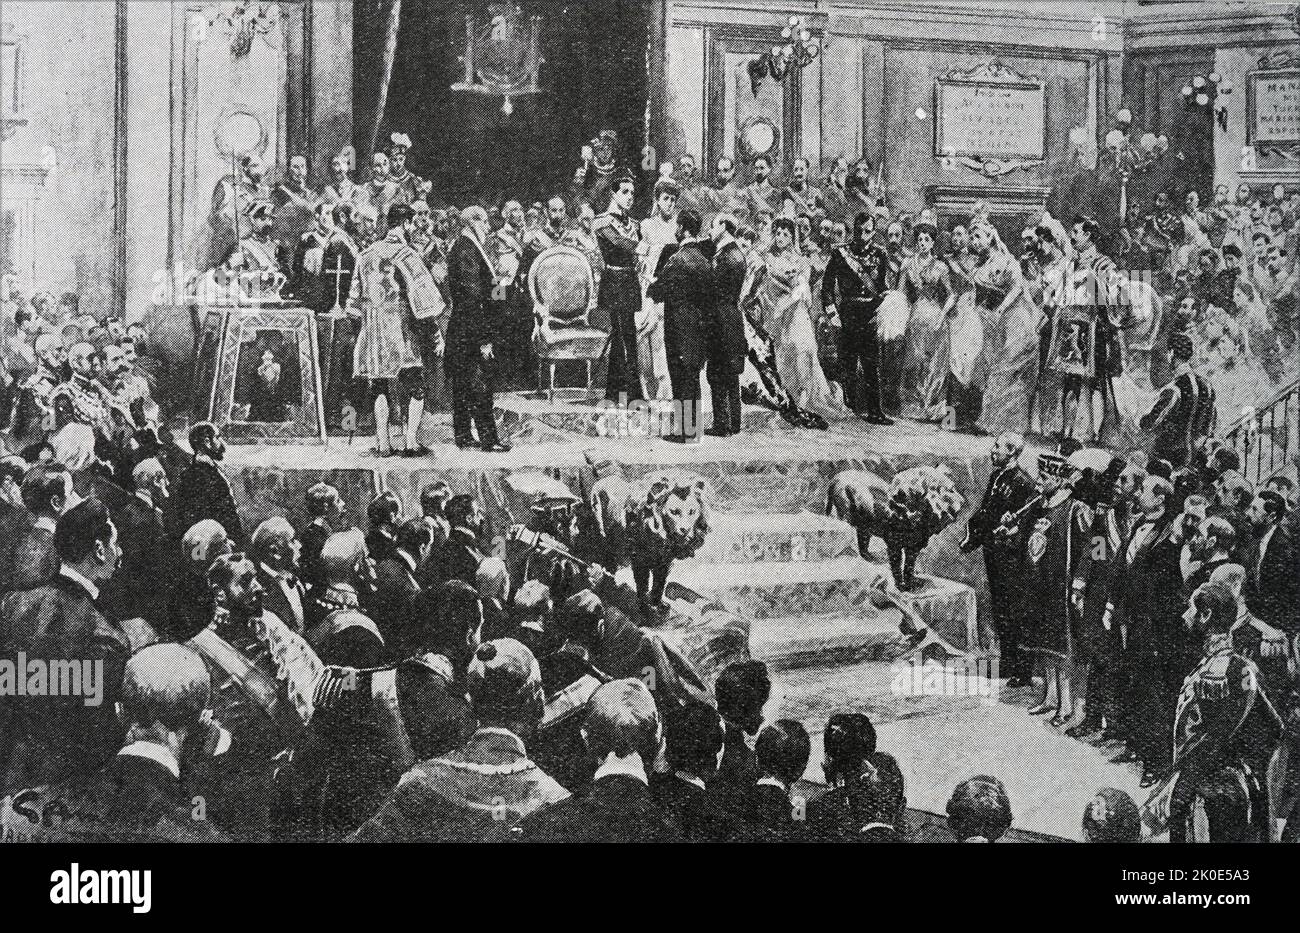 Der König, der den Eid zur Verfassung in der Halle von Cortes, 1902. Alfonso XIII (1886 - 1941), König von Spanien vom 17. Mai 1886 bis zum 14. April 1931, als die zweite spanische Republik ausgerufen wurde. Stockfoto